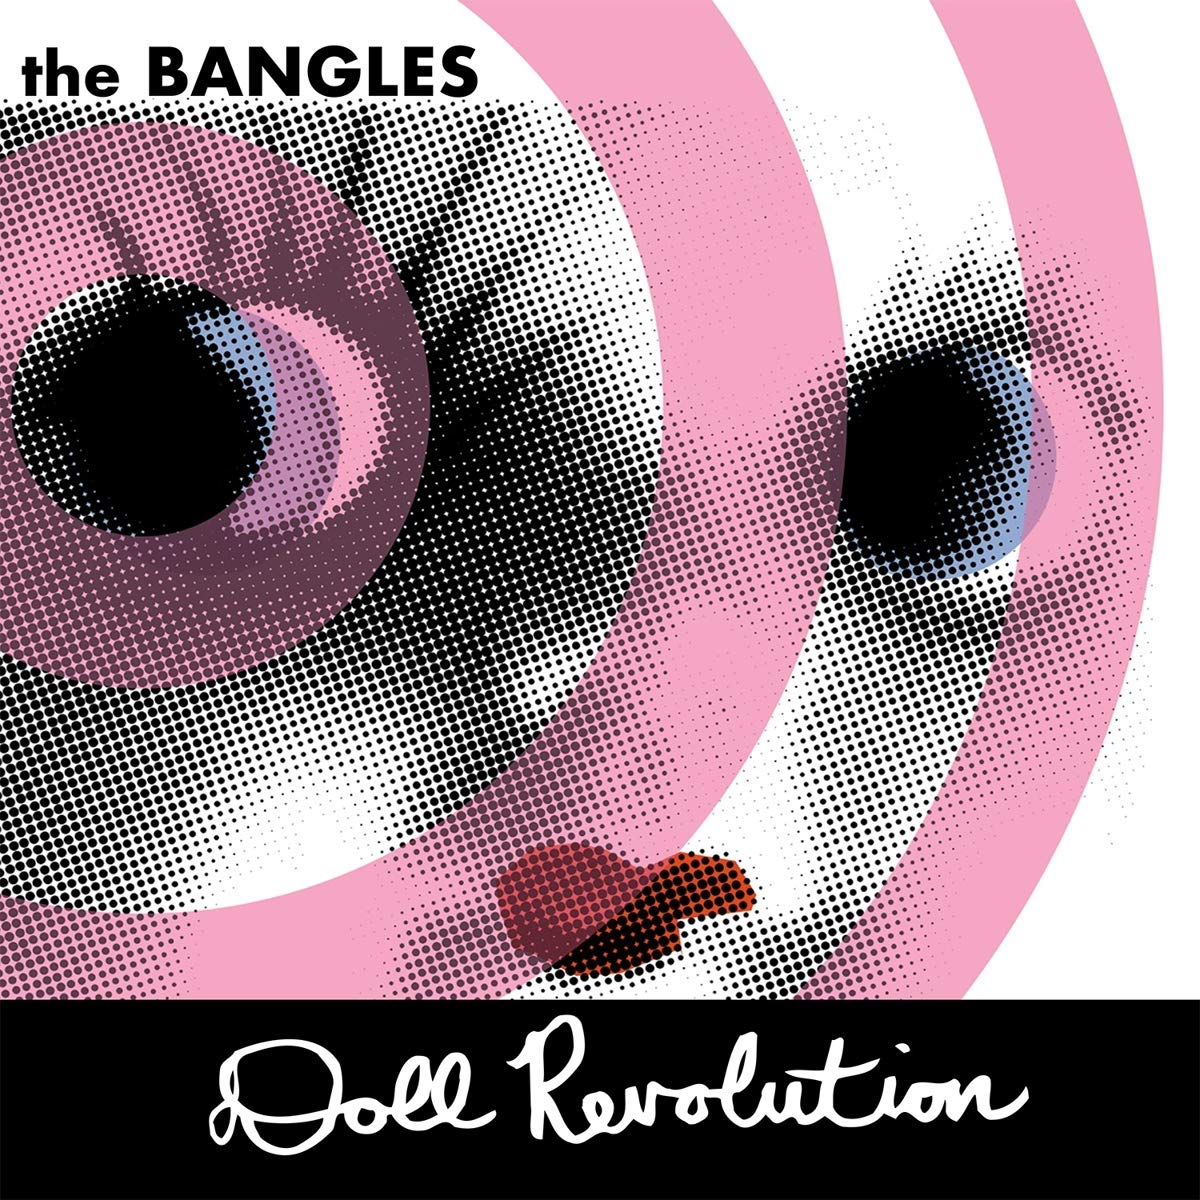 Bangles, The - Doll Revolution (White Vinyl) - 2 x LP